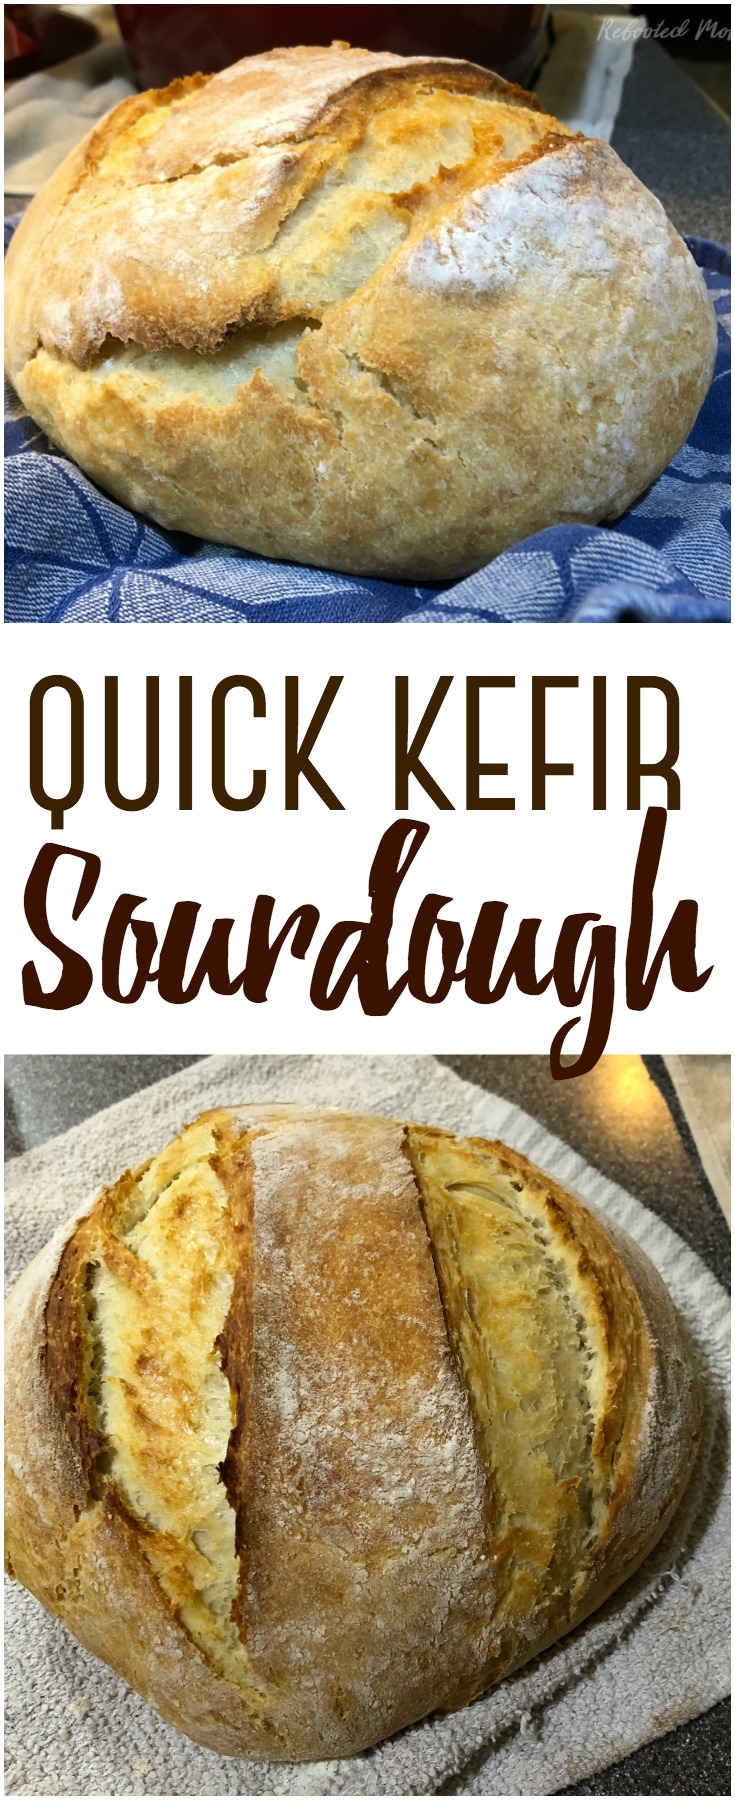 Make a successful quick kefir sourdough bread using kefir fermented milk in lieu of a sourdough starter. It bakes up beautifully!  #kefir #sourdough #bread #breadmaking